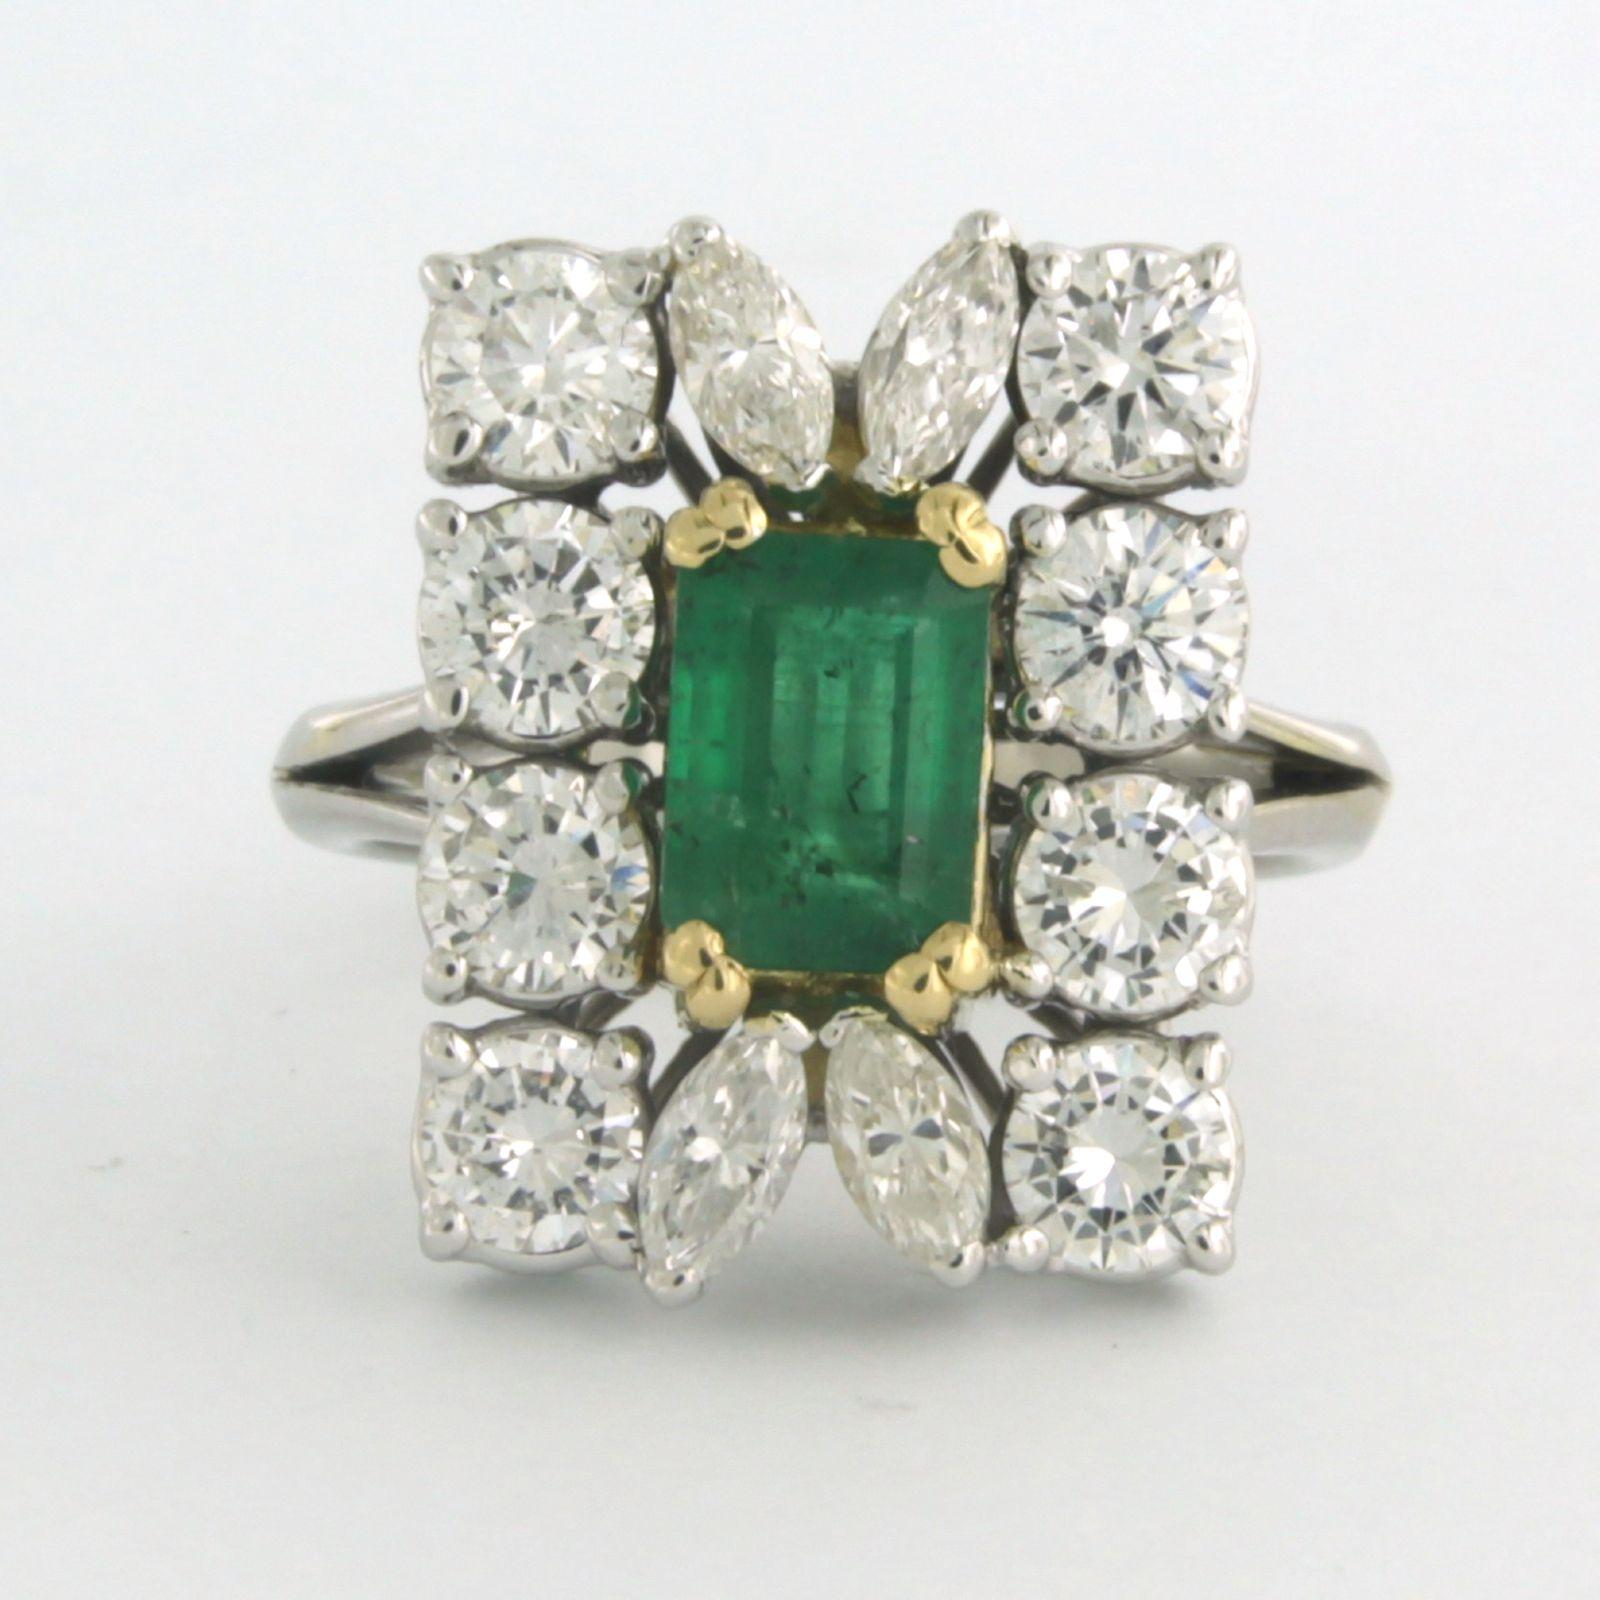 18k bicolor entourage Ring mit Smaragd zu setzen. 1,50ct und Entourage-Diamanten im Marquise- und Brillantschliff bis zu. 2.50ct - F/G - VS/SI - Ringgröße U.S. 7.5 - EU. 17.75(56)

detaillierte Beschreibung:

Die Oberseite des Rings hat die Form